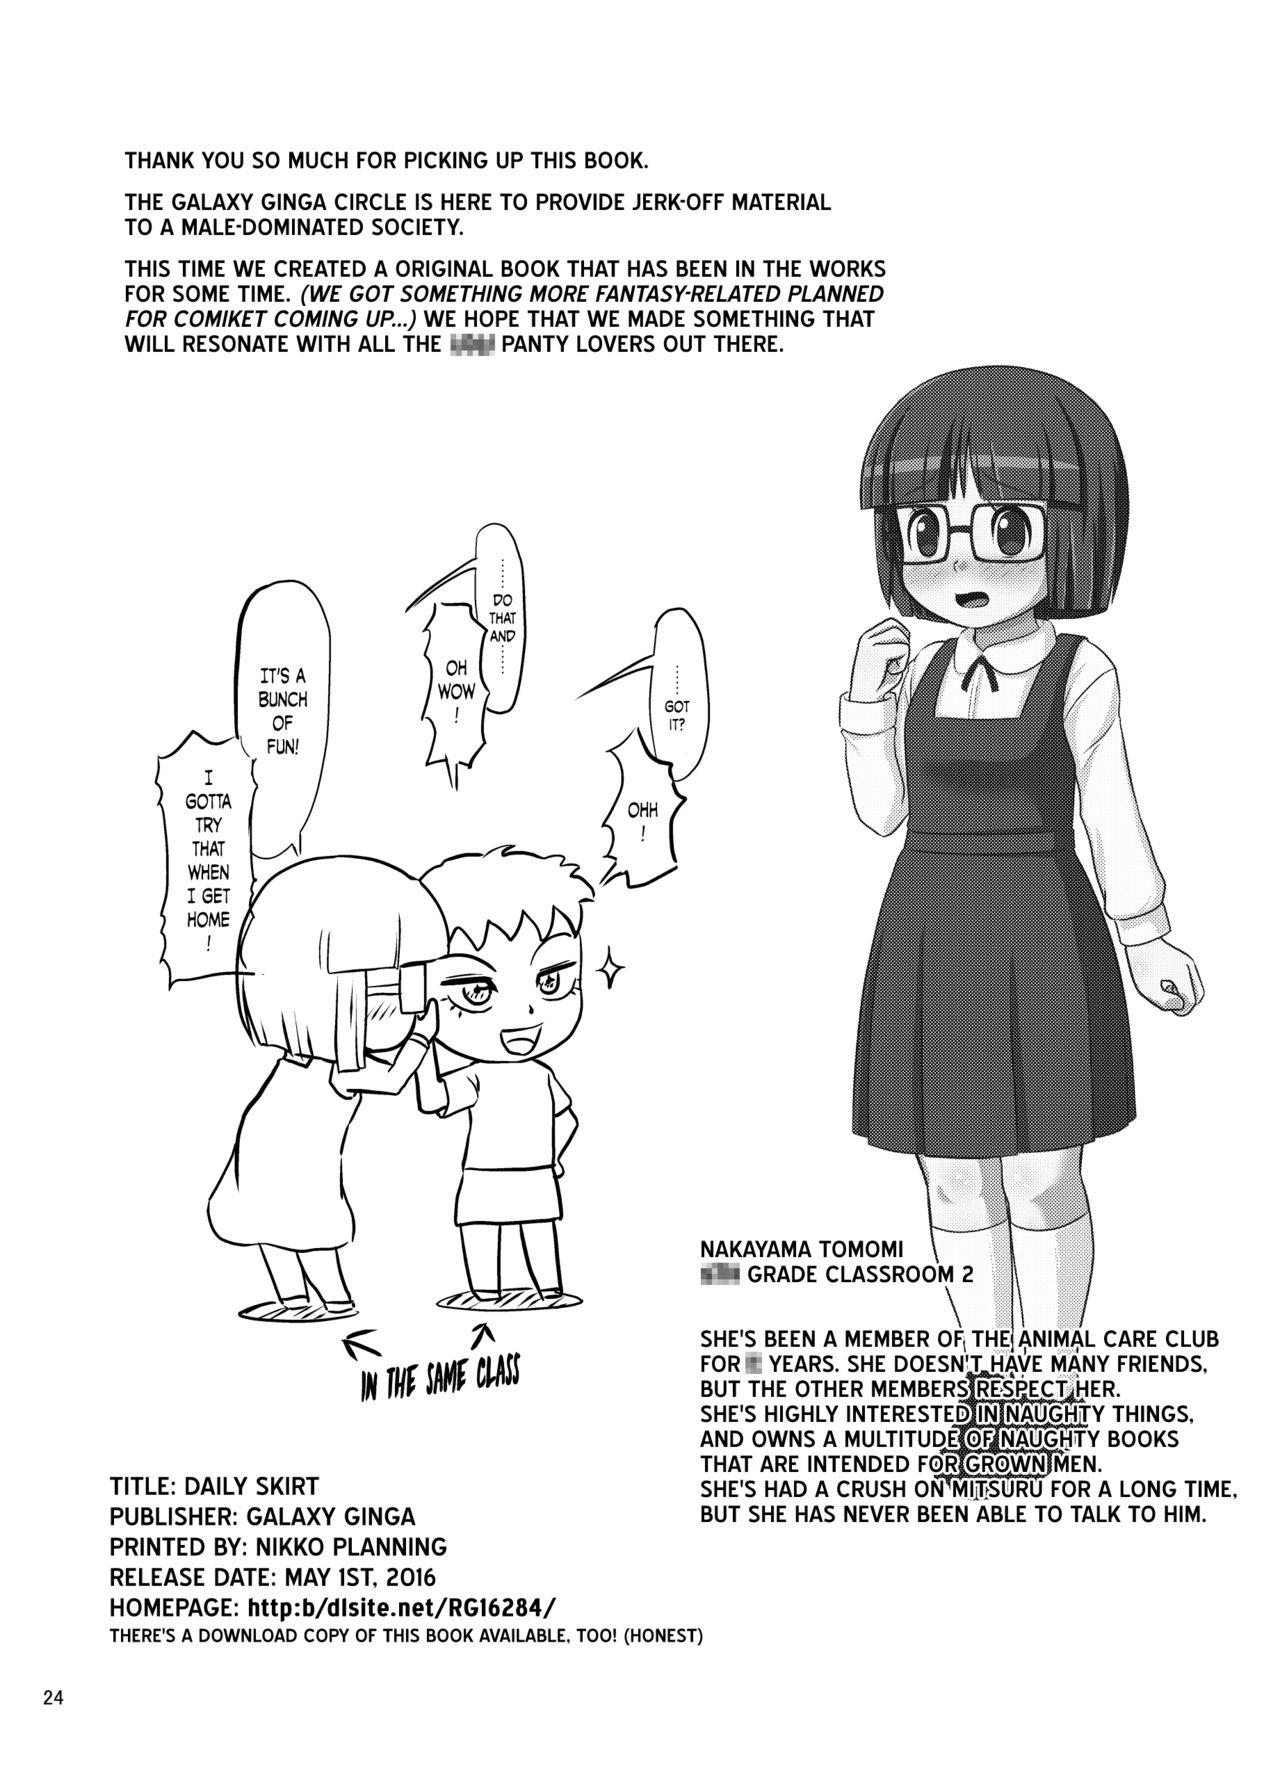 Shy Himekuri Skirt | Daily Skirt - Original Exibicionismo - Page 23